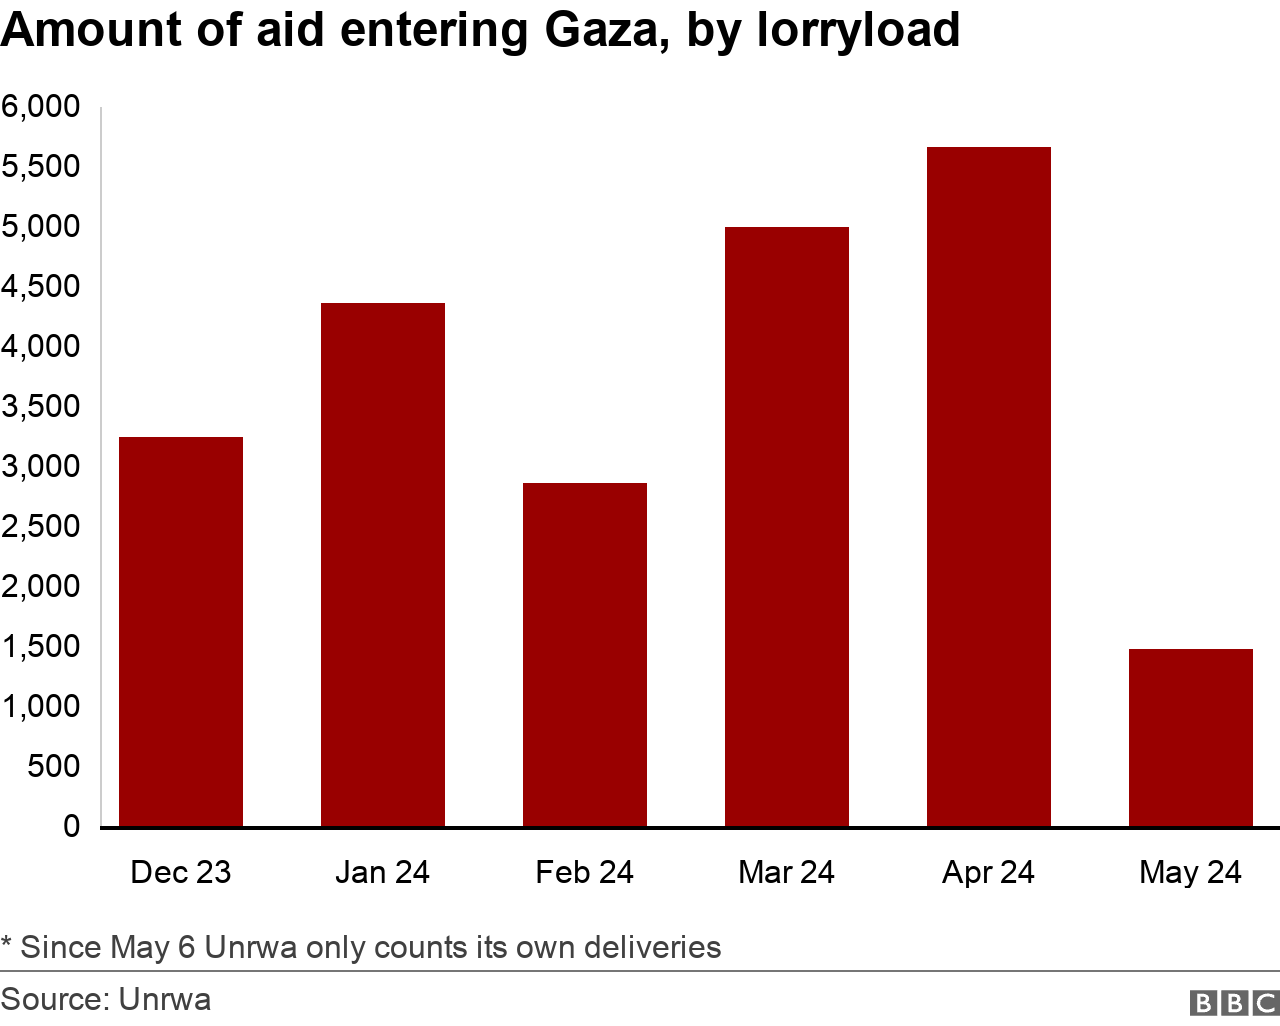 지난해 12월 23일부터 올해 5월 24일까지 가자 지구로 투입되는 구호품의 양(단위: 트럭 하나에 실리는 양)